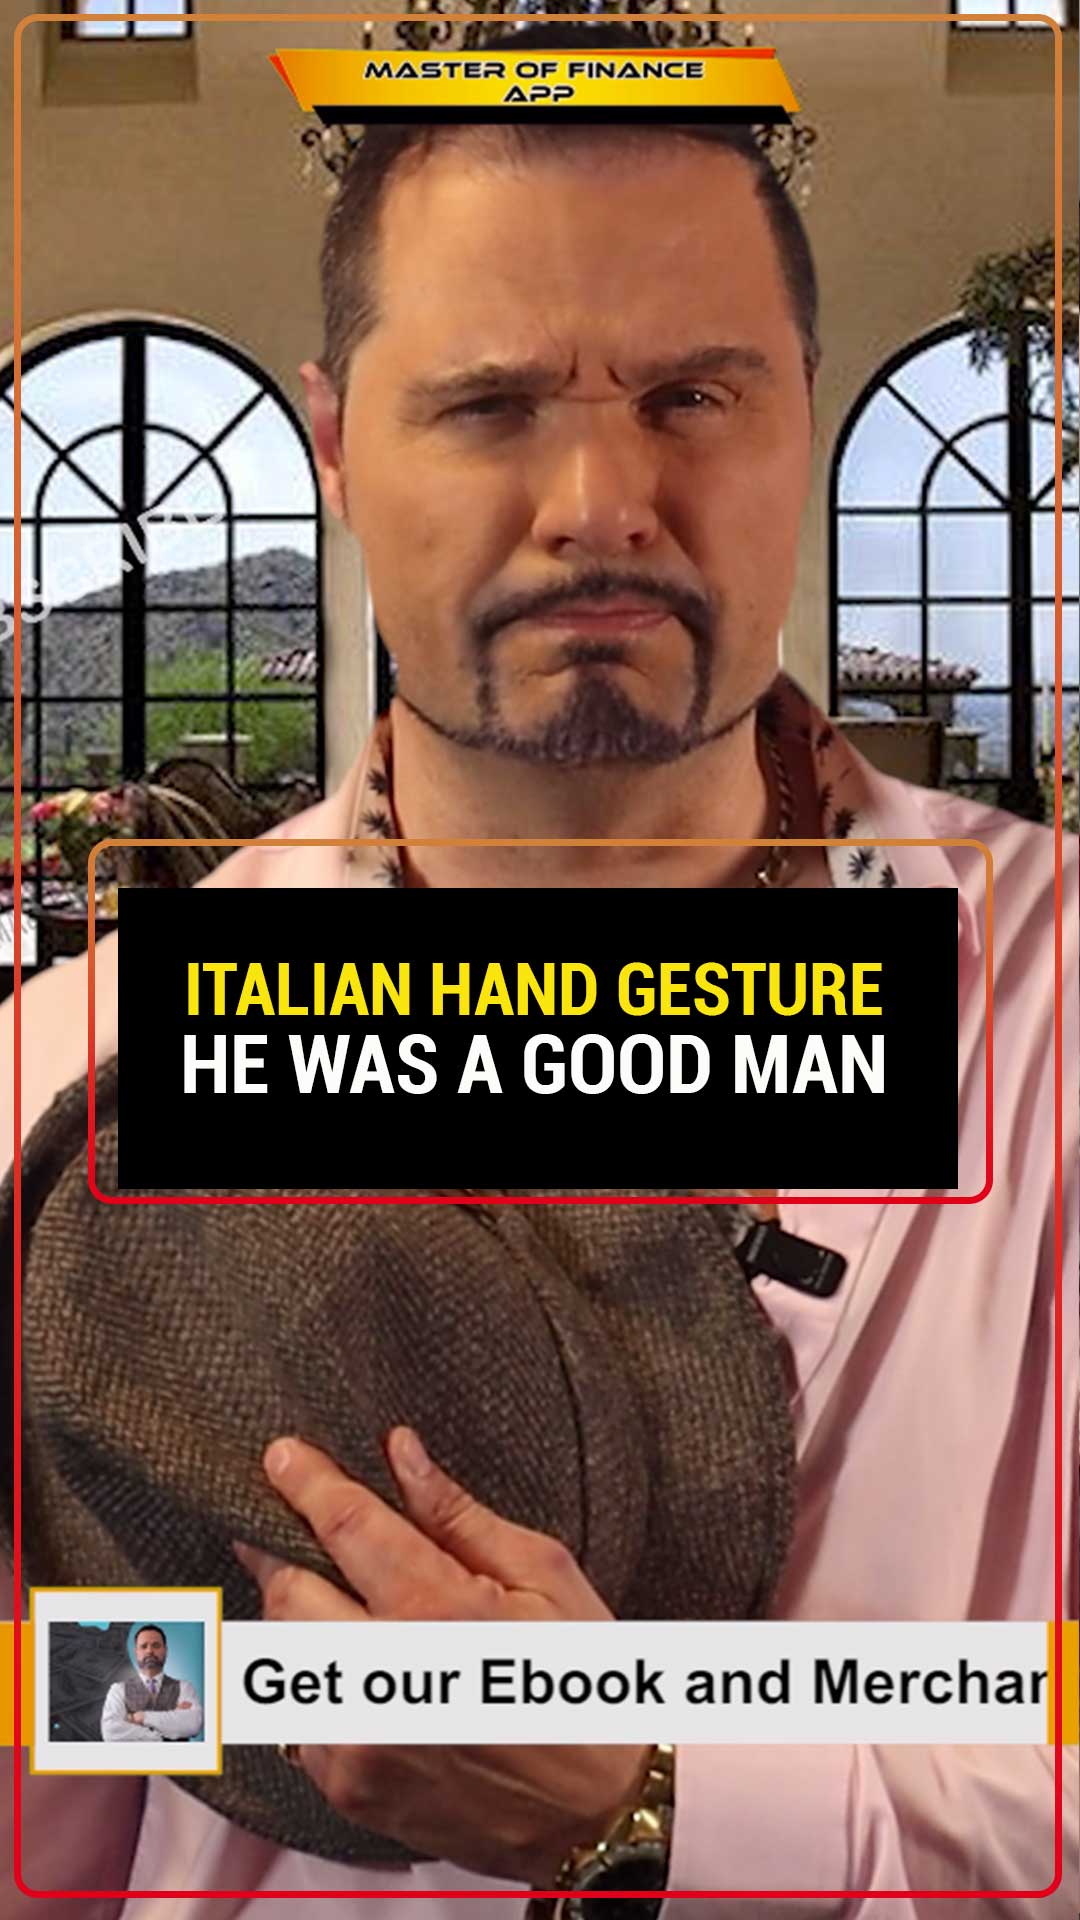 Итальянские жесты руками!

Это означает: «Он был хорошим человеком».